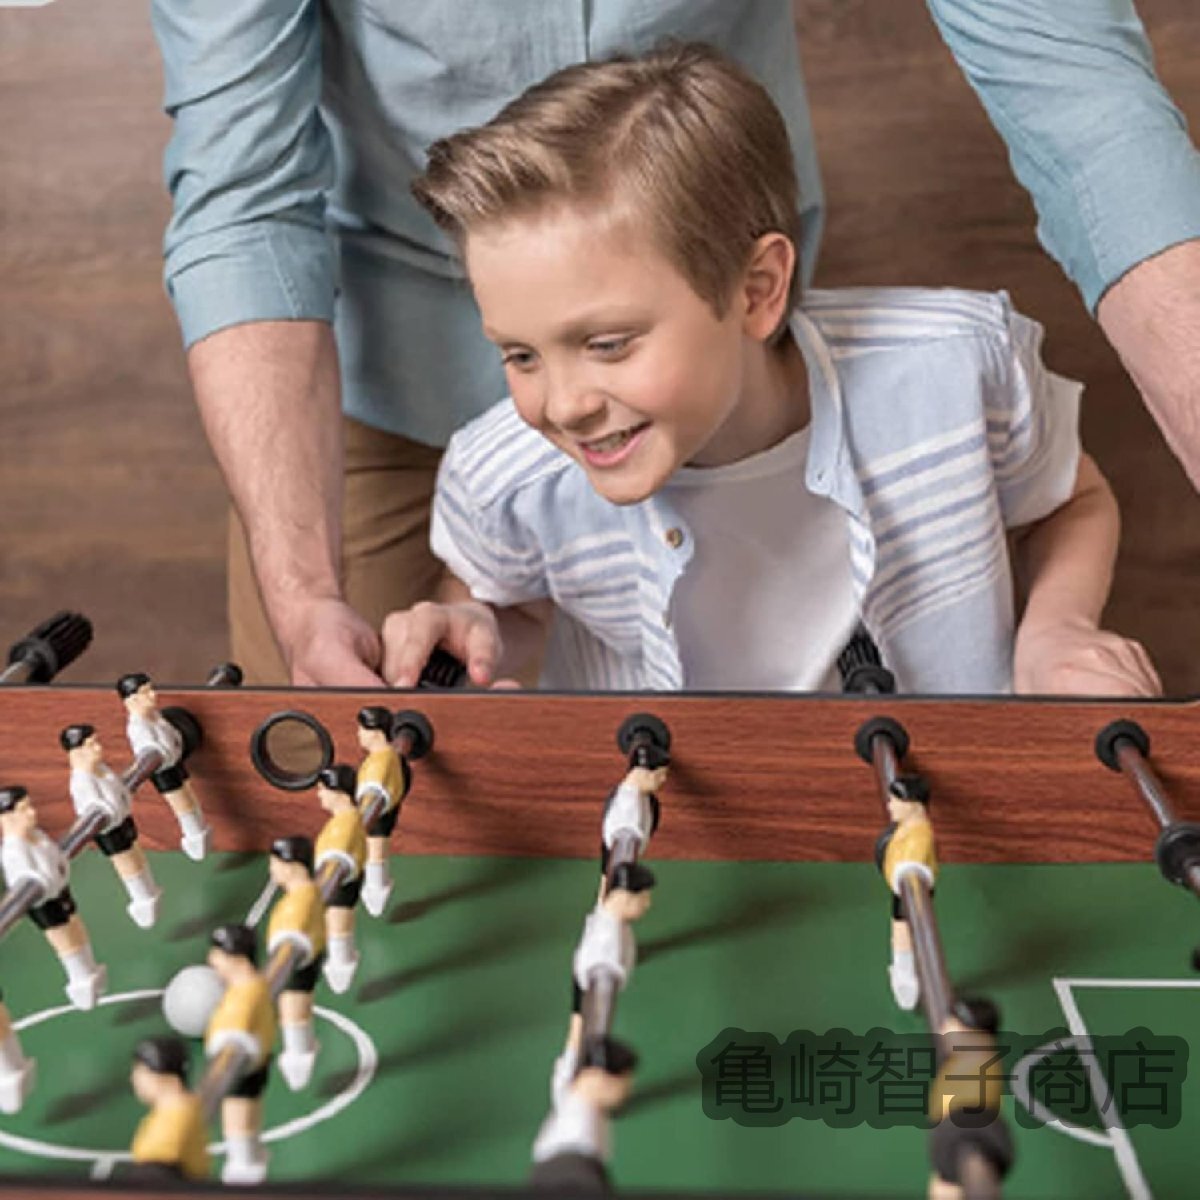 テーブルサッカー マルチプレイヤー木製サッカーテーブルゲーム、組み立てが簡単なテーブルサッカー、パーティーや家族向け_画像4